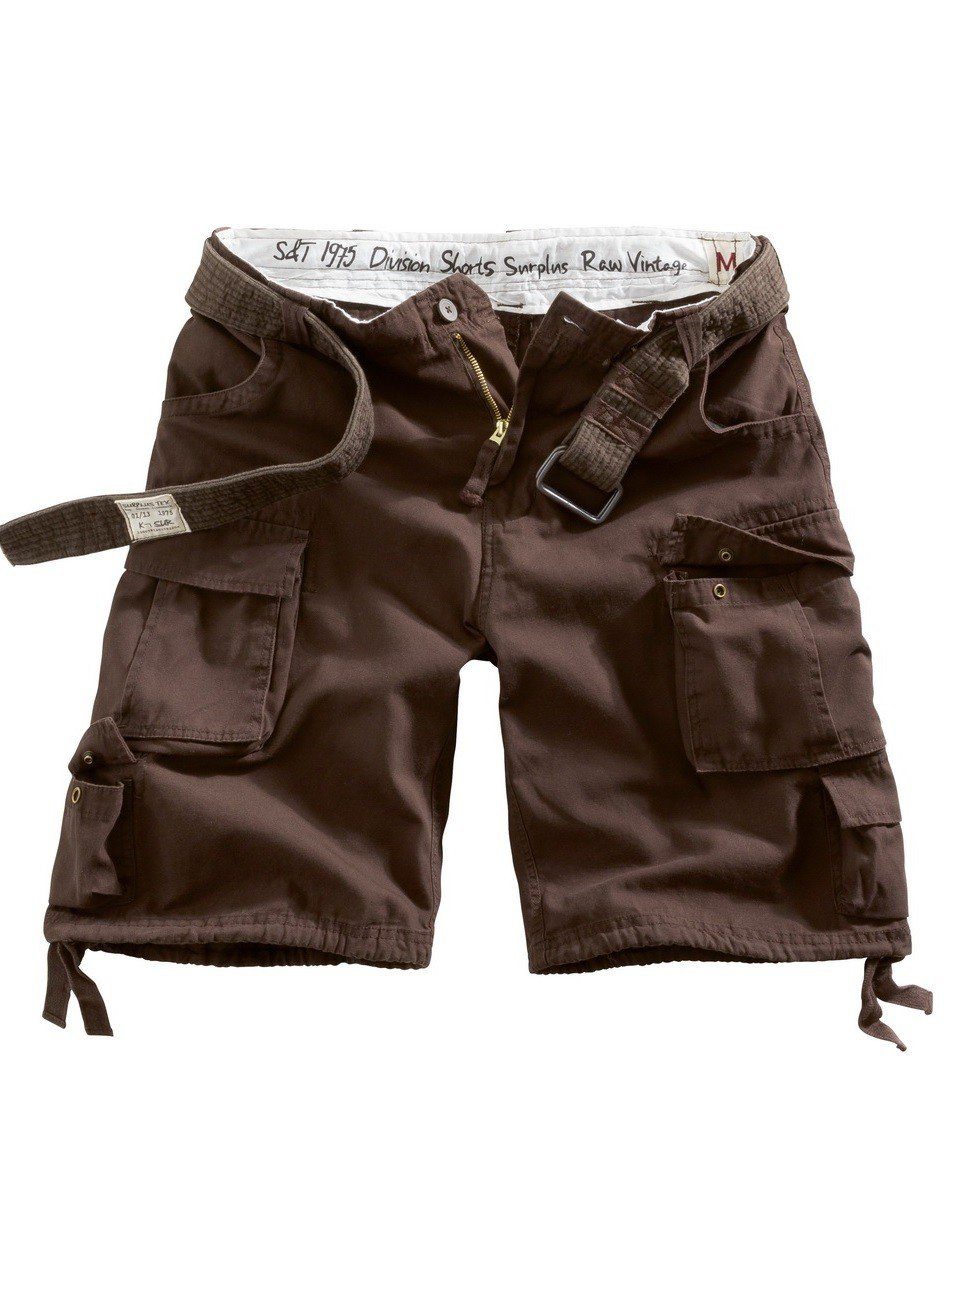 Surplus Raw Vintage Shorts Division mit 100% Baumwolle Brown (07-5598)